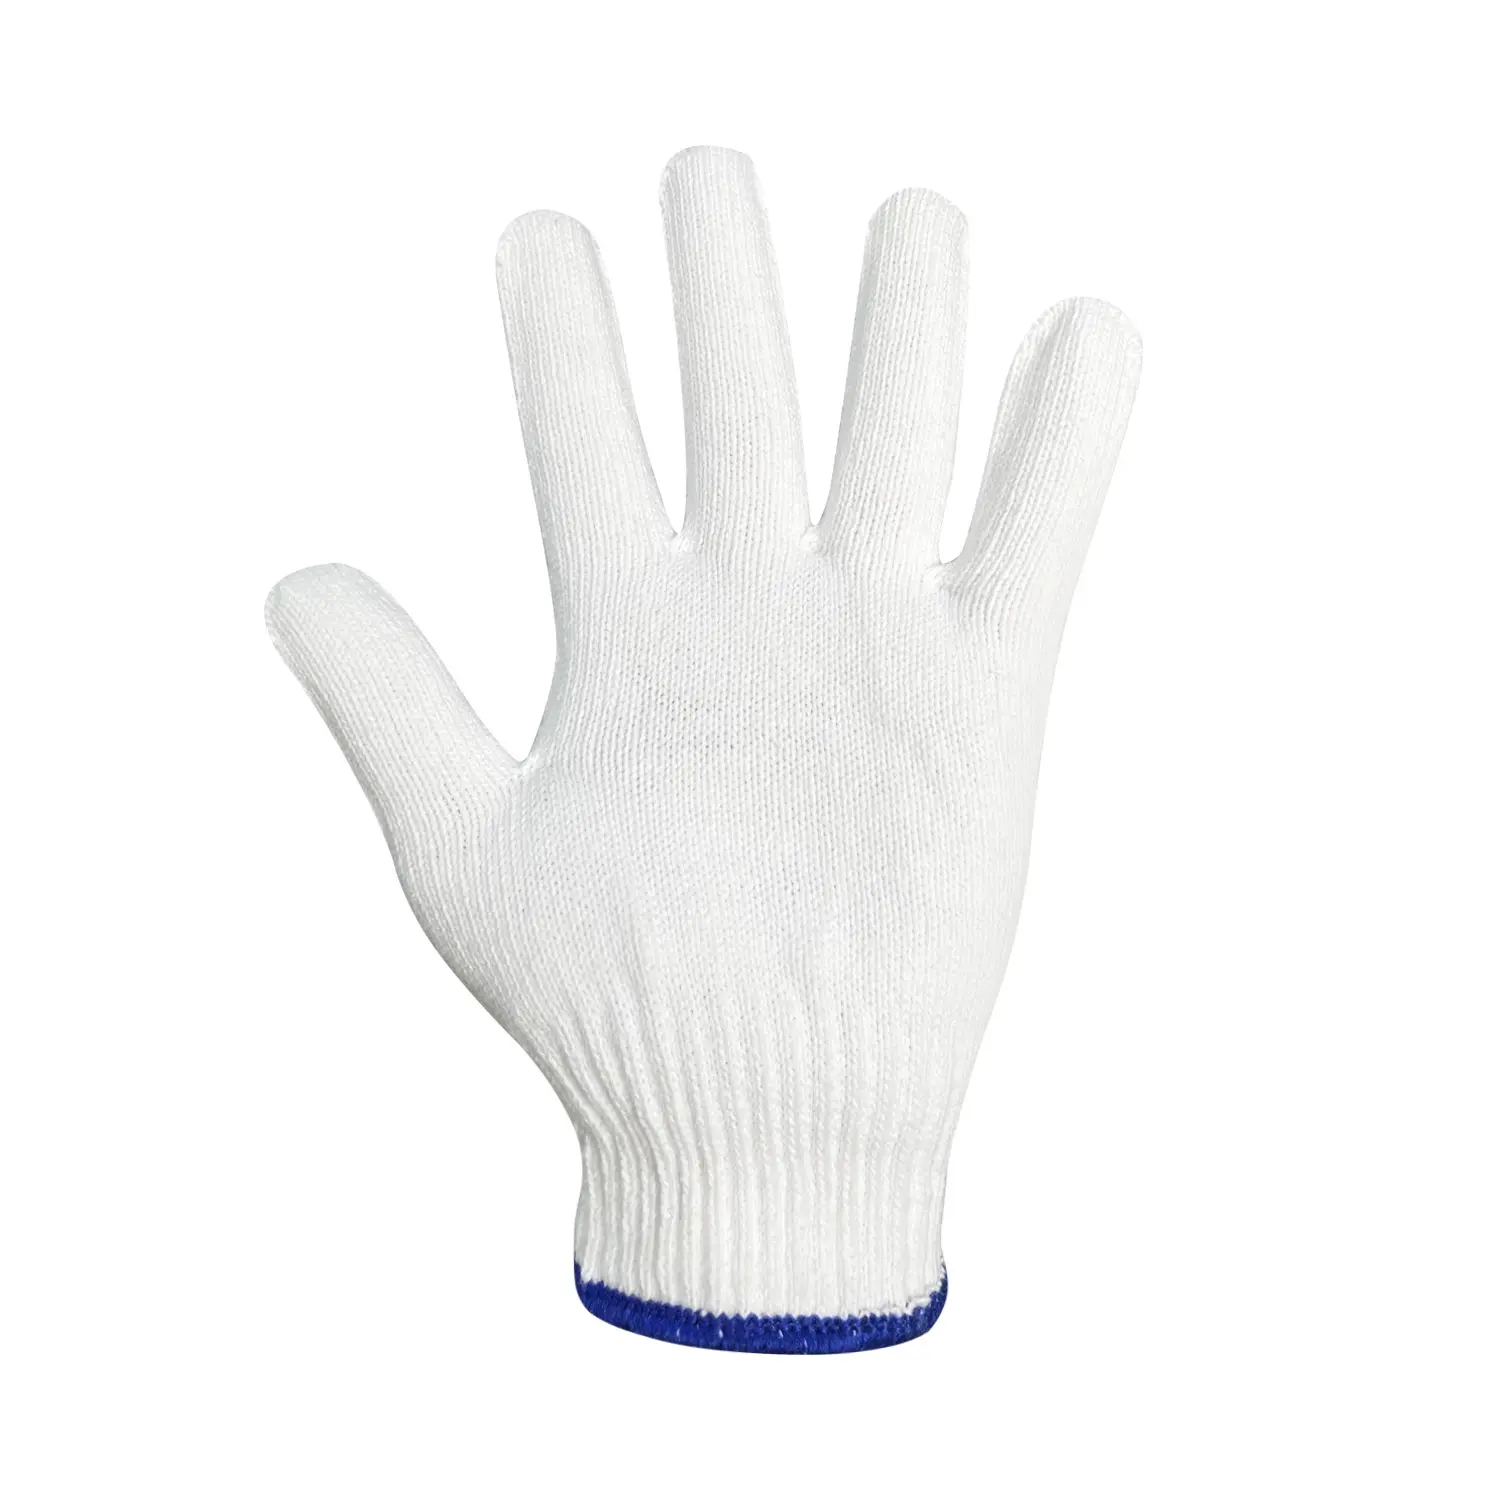 ถุงมือผ้าฝ้ายสีขาวบริสุทธิ์ถักถุงมือมือถุงมือทำงานสำหรับการก่อสร้าง